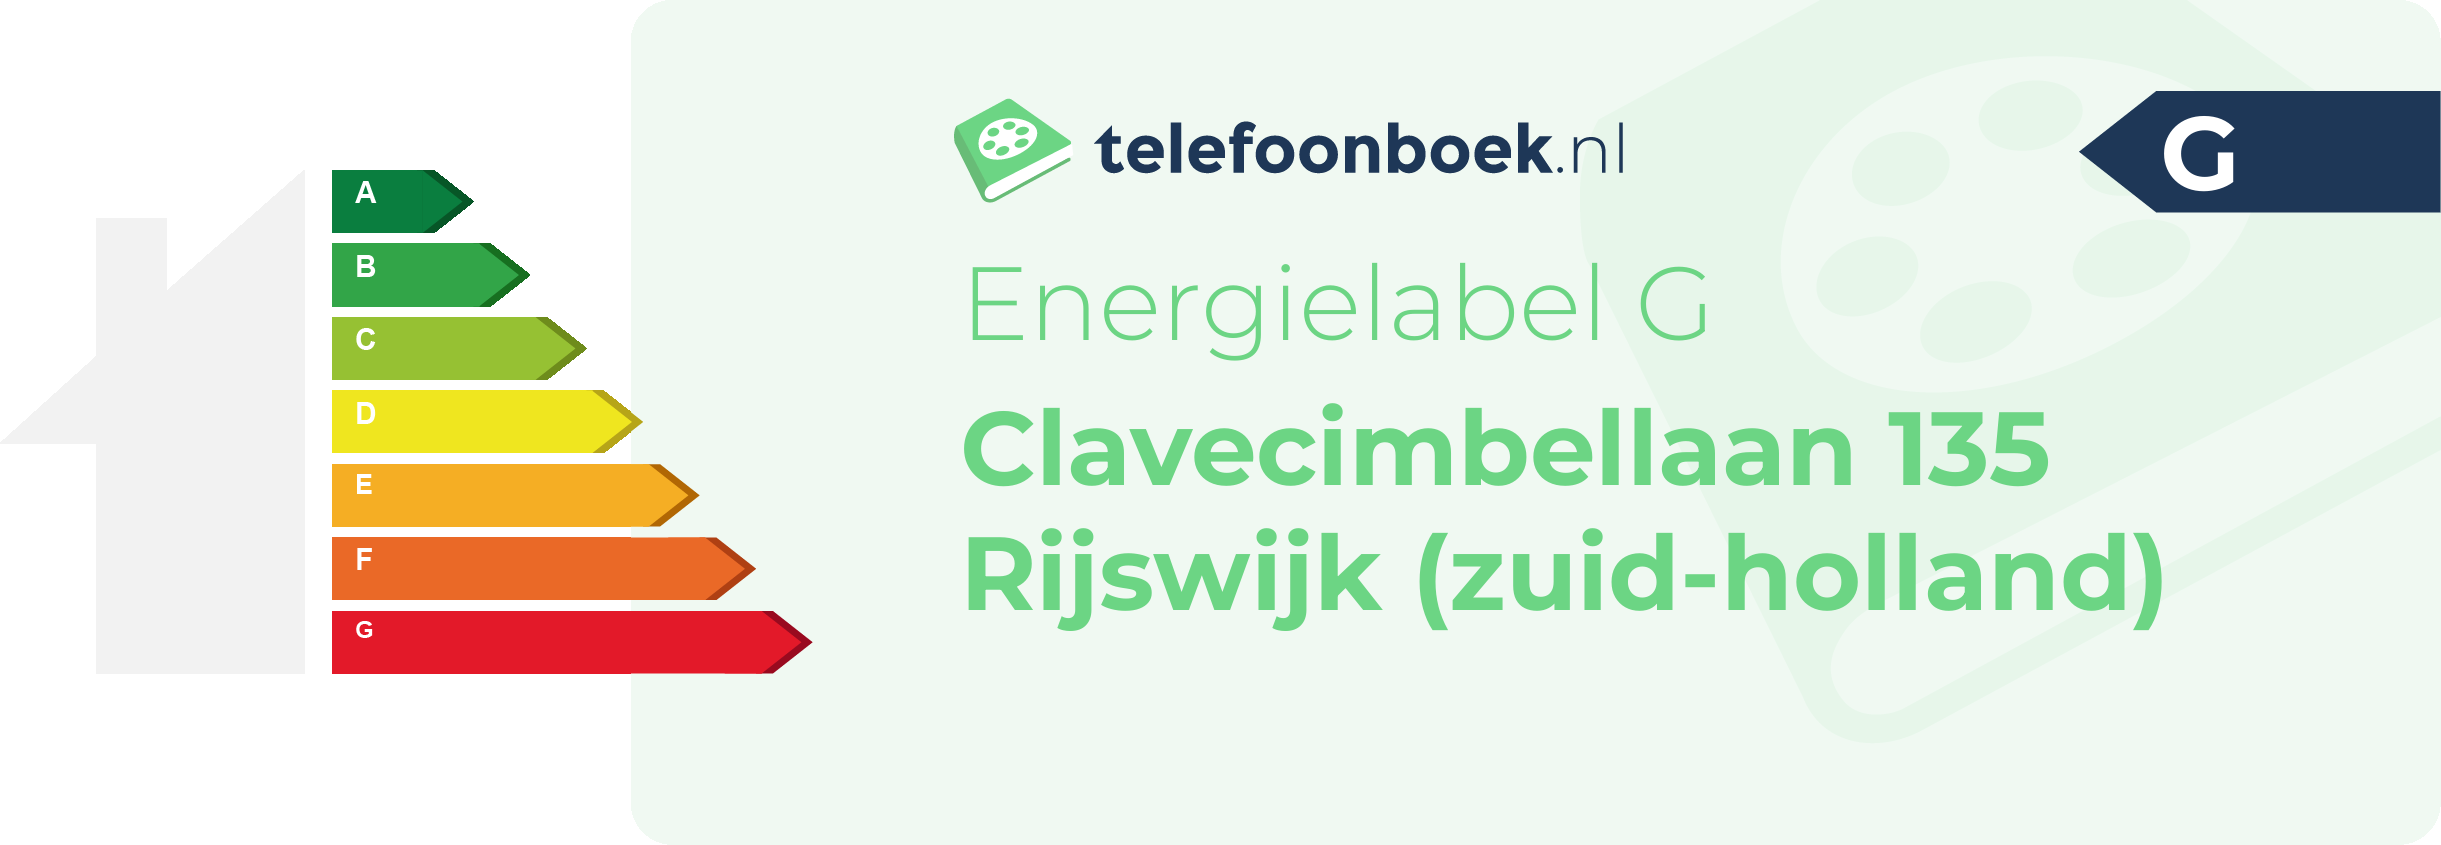 Energielabel Clavecimbellaan 135 Rijswijk (Zuid-Holland)